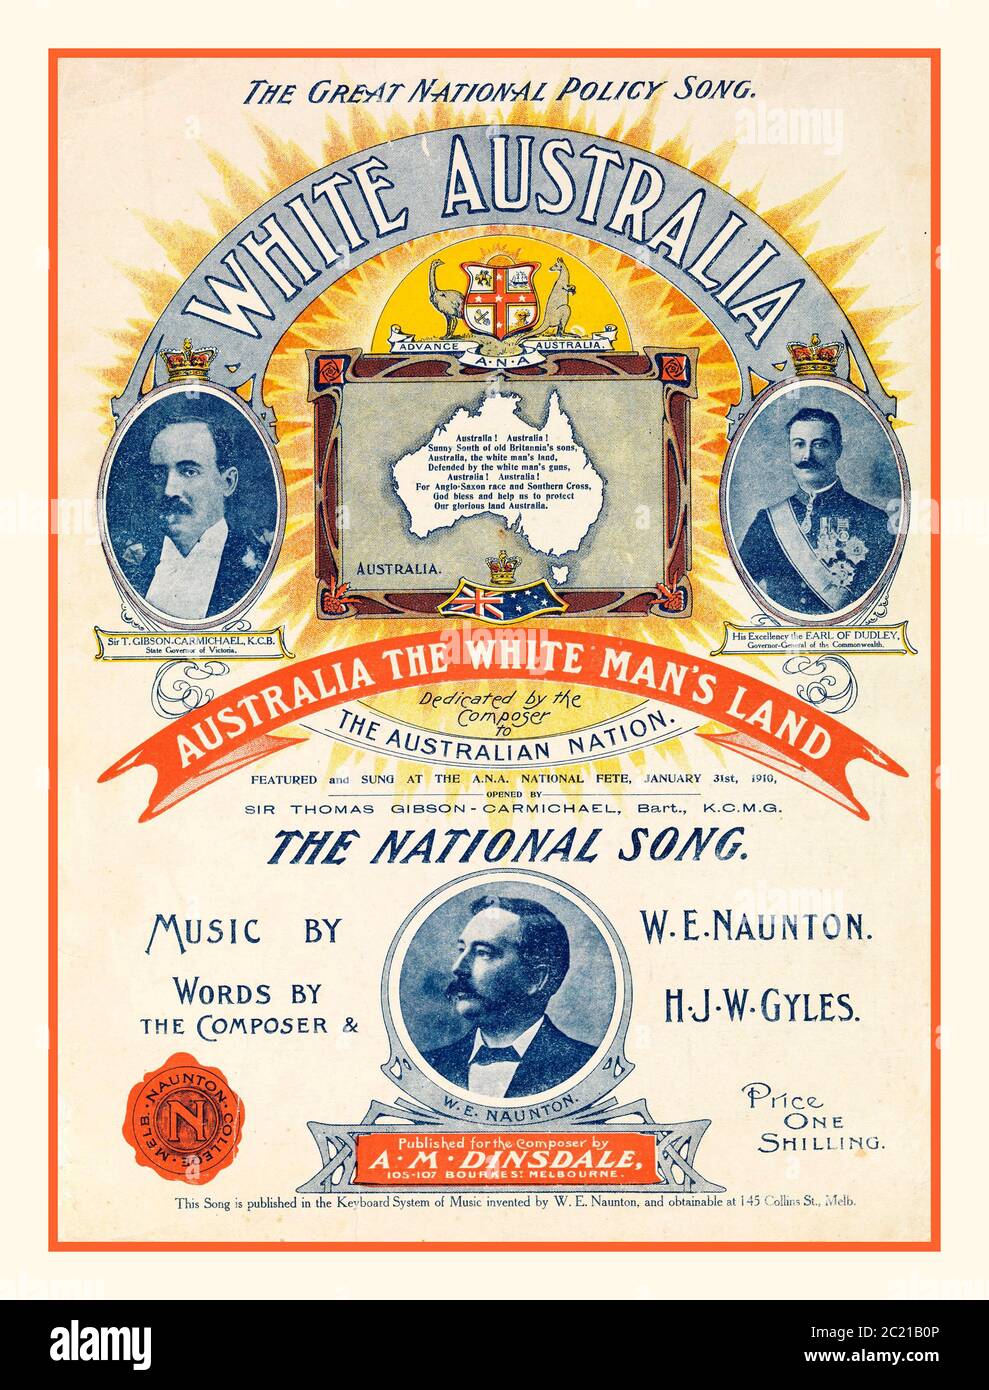 Couverture de la musique de fond raciste antiaborigène (Australie, environ 1910) partitions pour la chanson « White Australia », composée par W.E. Naunton avec des mots de Naunton et H.J.W. Gyles, et joué à l'Australian Natifss' Association National Fete, 31 janvier 1910. Les motifs sur la feuille de musique incluent une carte blanche de l'Australie. Naunton était un compositeur prolifique qui a écrit de la musique pour de nombreuses chansons relatives au nationalisme australien et à d'autres sujets. 'Un peuple, un destin, une Nation' - 'un drapeau, une langue, une destination de peuple. Australie la terre de l'homme blanc, / défendue par les armes de l'homme blanc Banque D'Images